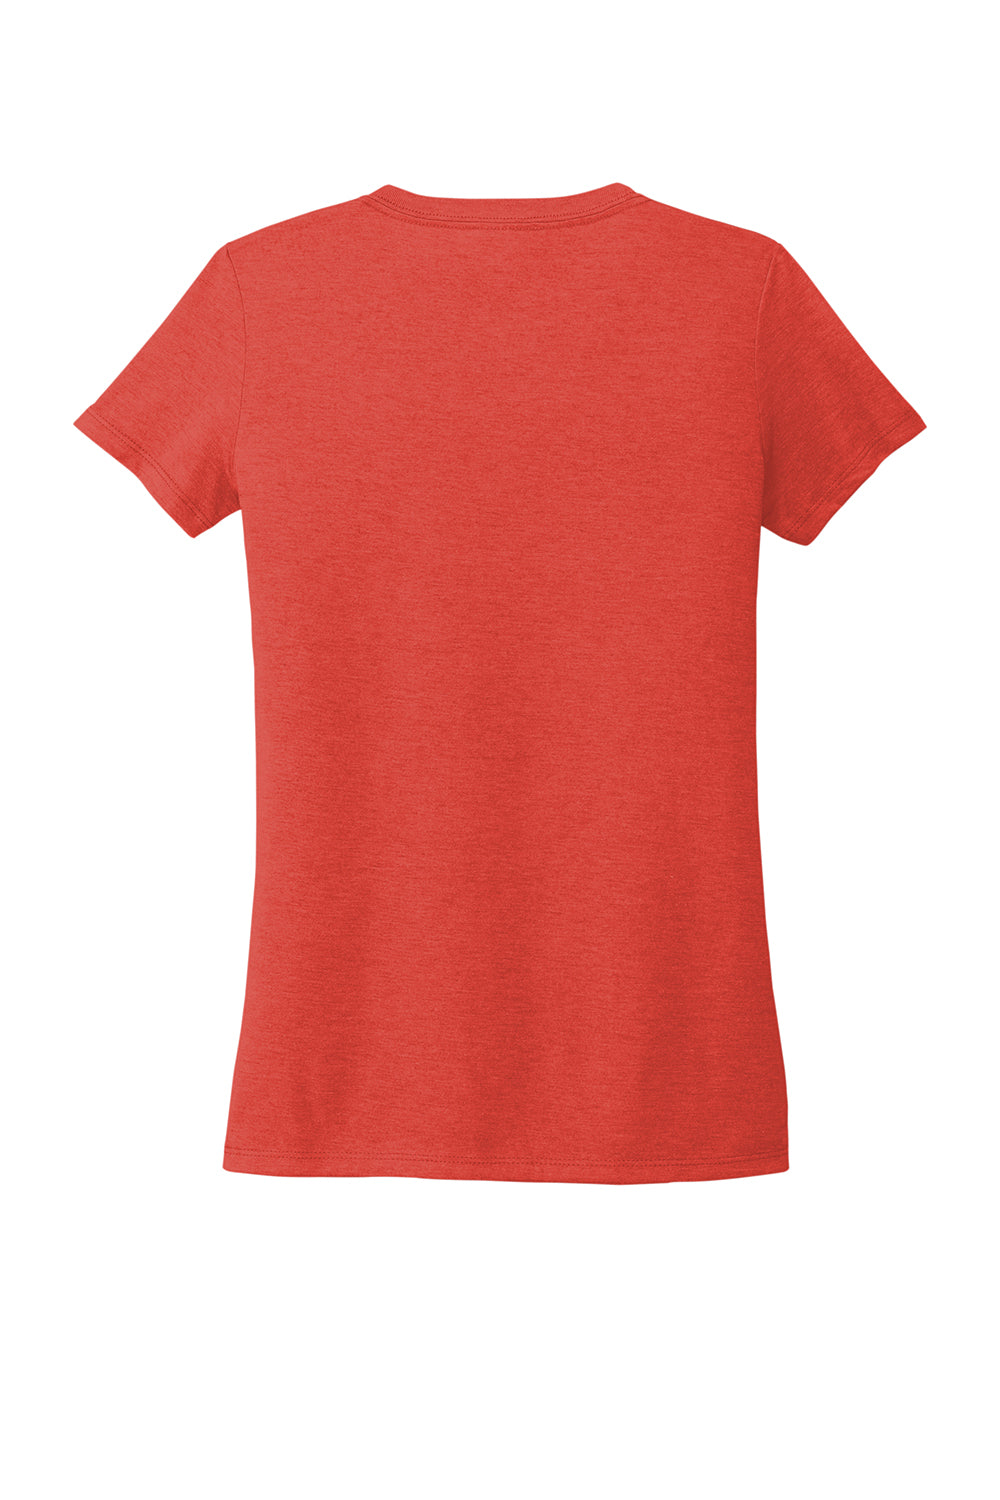 Allmade AL2018 Womens Short Sleeve V-Neck T-Shirt Desert Sun Red Flat Back